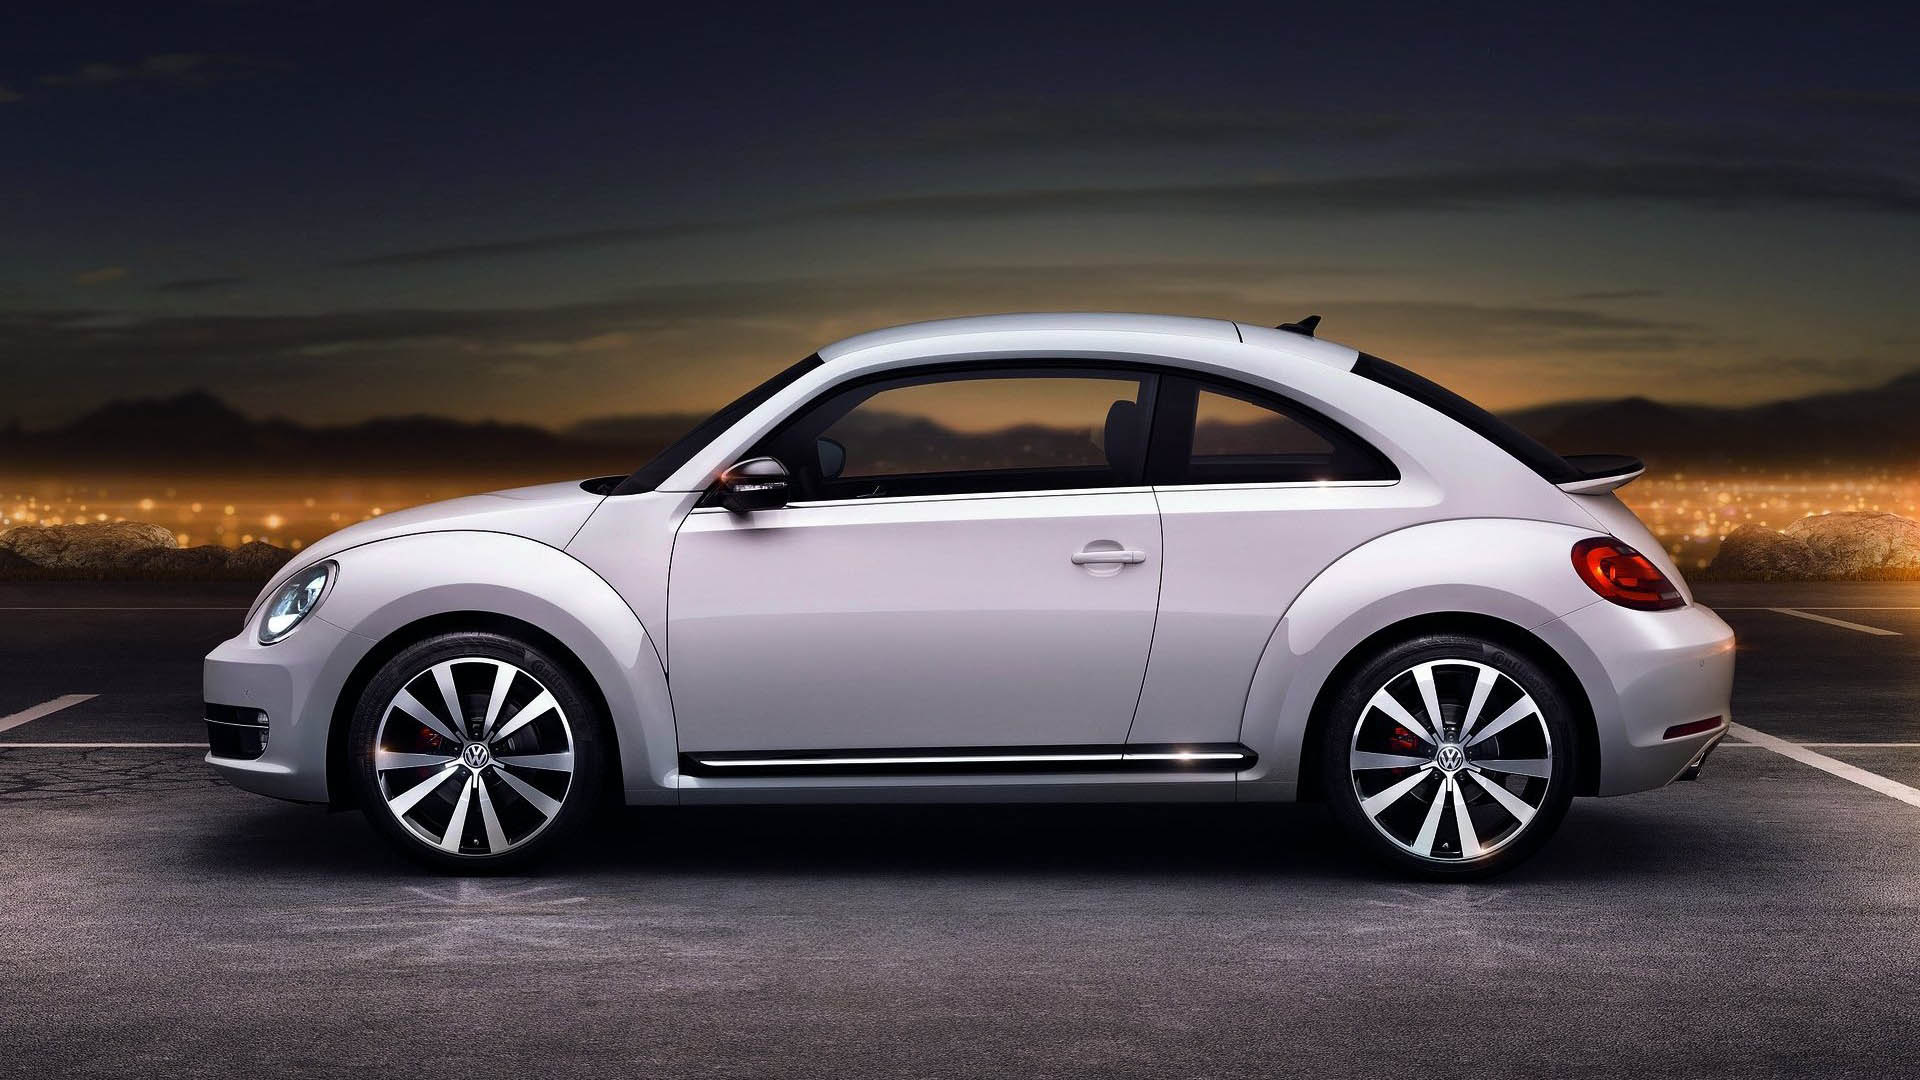 Volkswagen Beetle 2012 Wallpaper 4 1920x1080